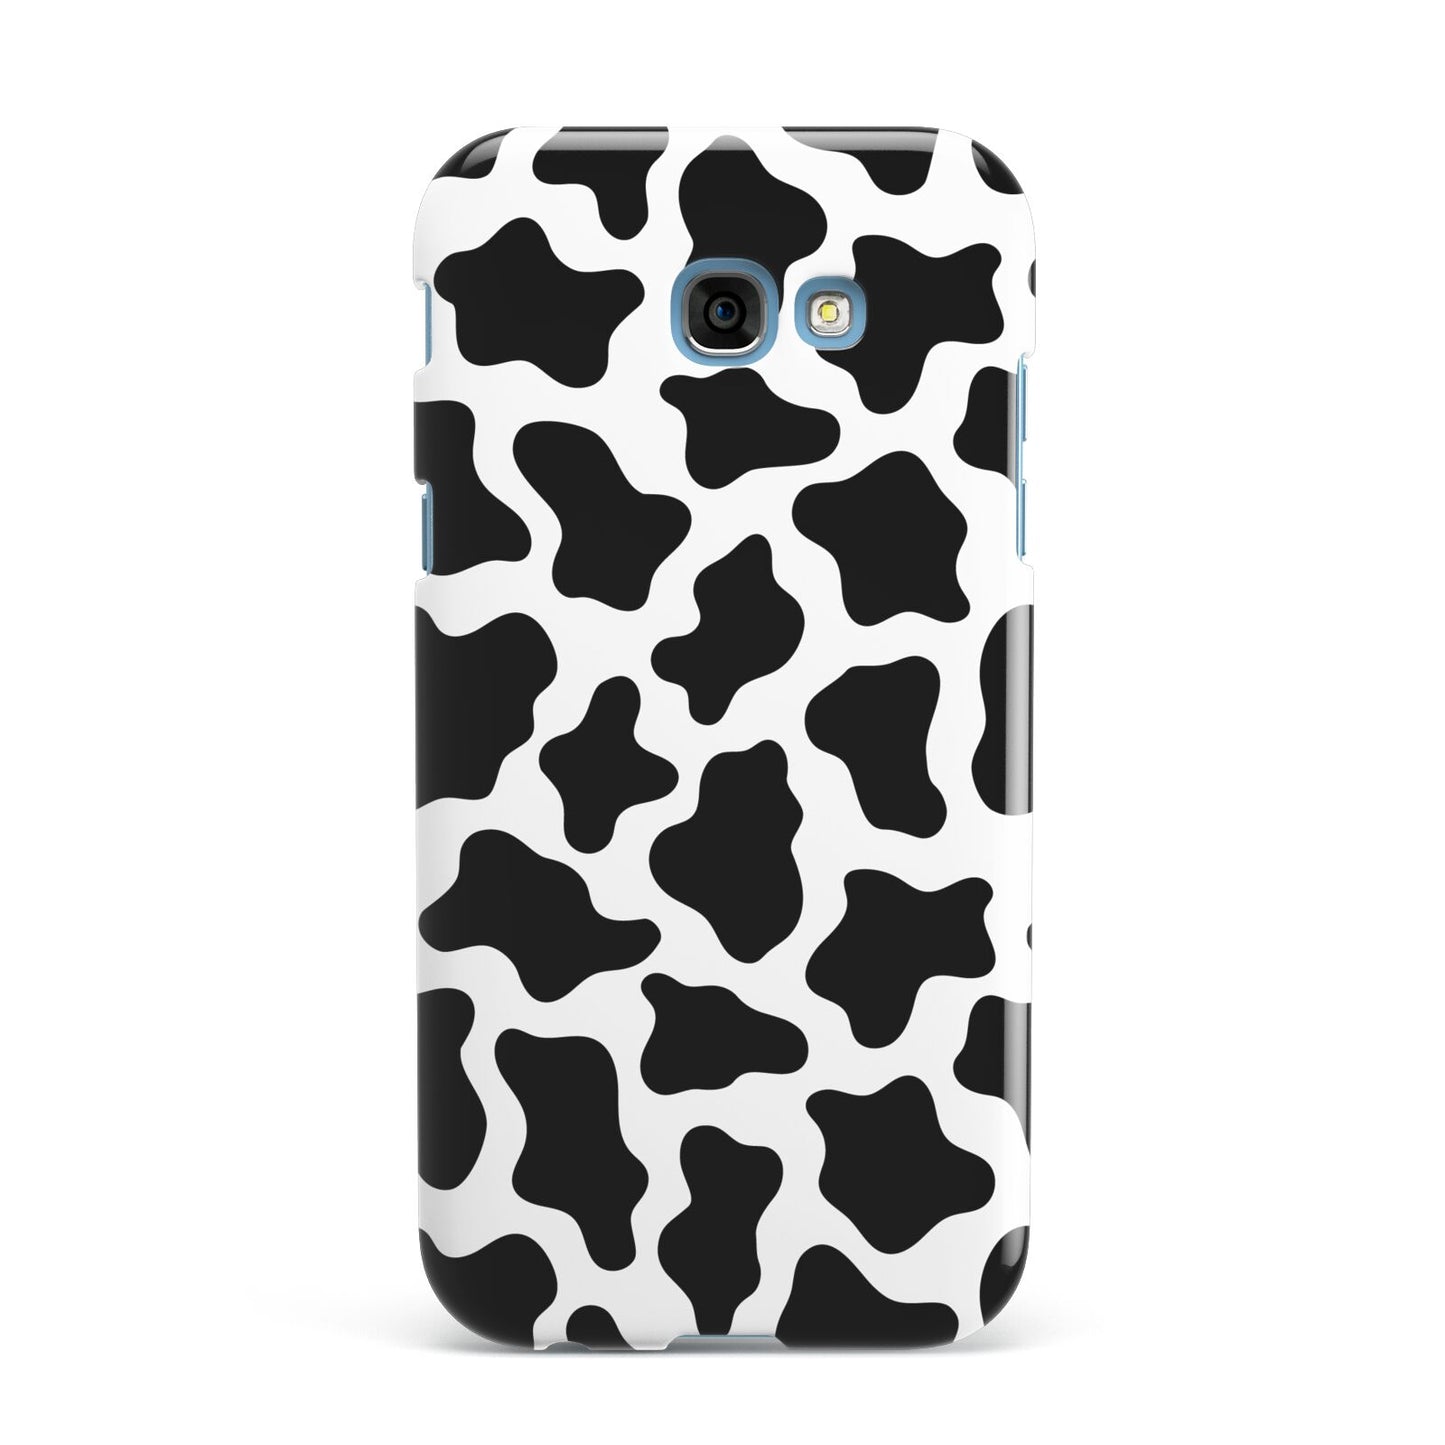 Cow Print Samsung Galaxy A7 2017 Case